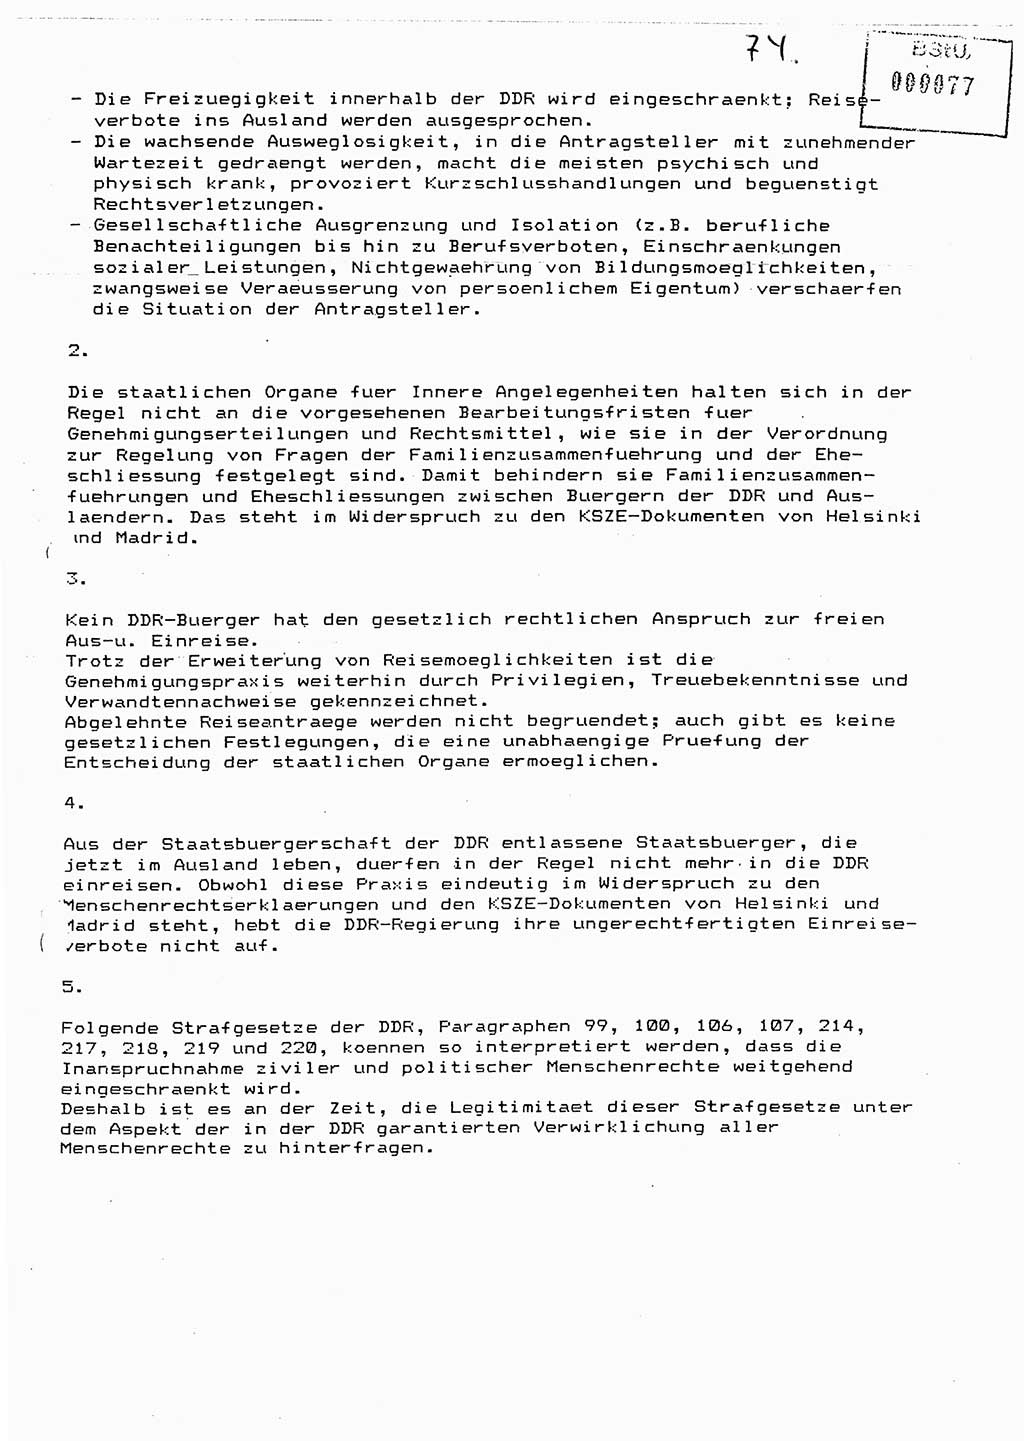 Diplomarbeit Major Günter Müller (HA Ⅸ/9), Ministerium für Staatssicherheit (MfS) [Deutsche Demokratische Republik (DDR)], Juristische Hochschule (JHS), Vertrauliche Verschlußsache (VVS) o001-402/89, Potsdam 1989, Seite 74 (Dipl.-Arb. MfS DDR JHS VVS o001-402/89 1989, S. 74)